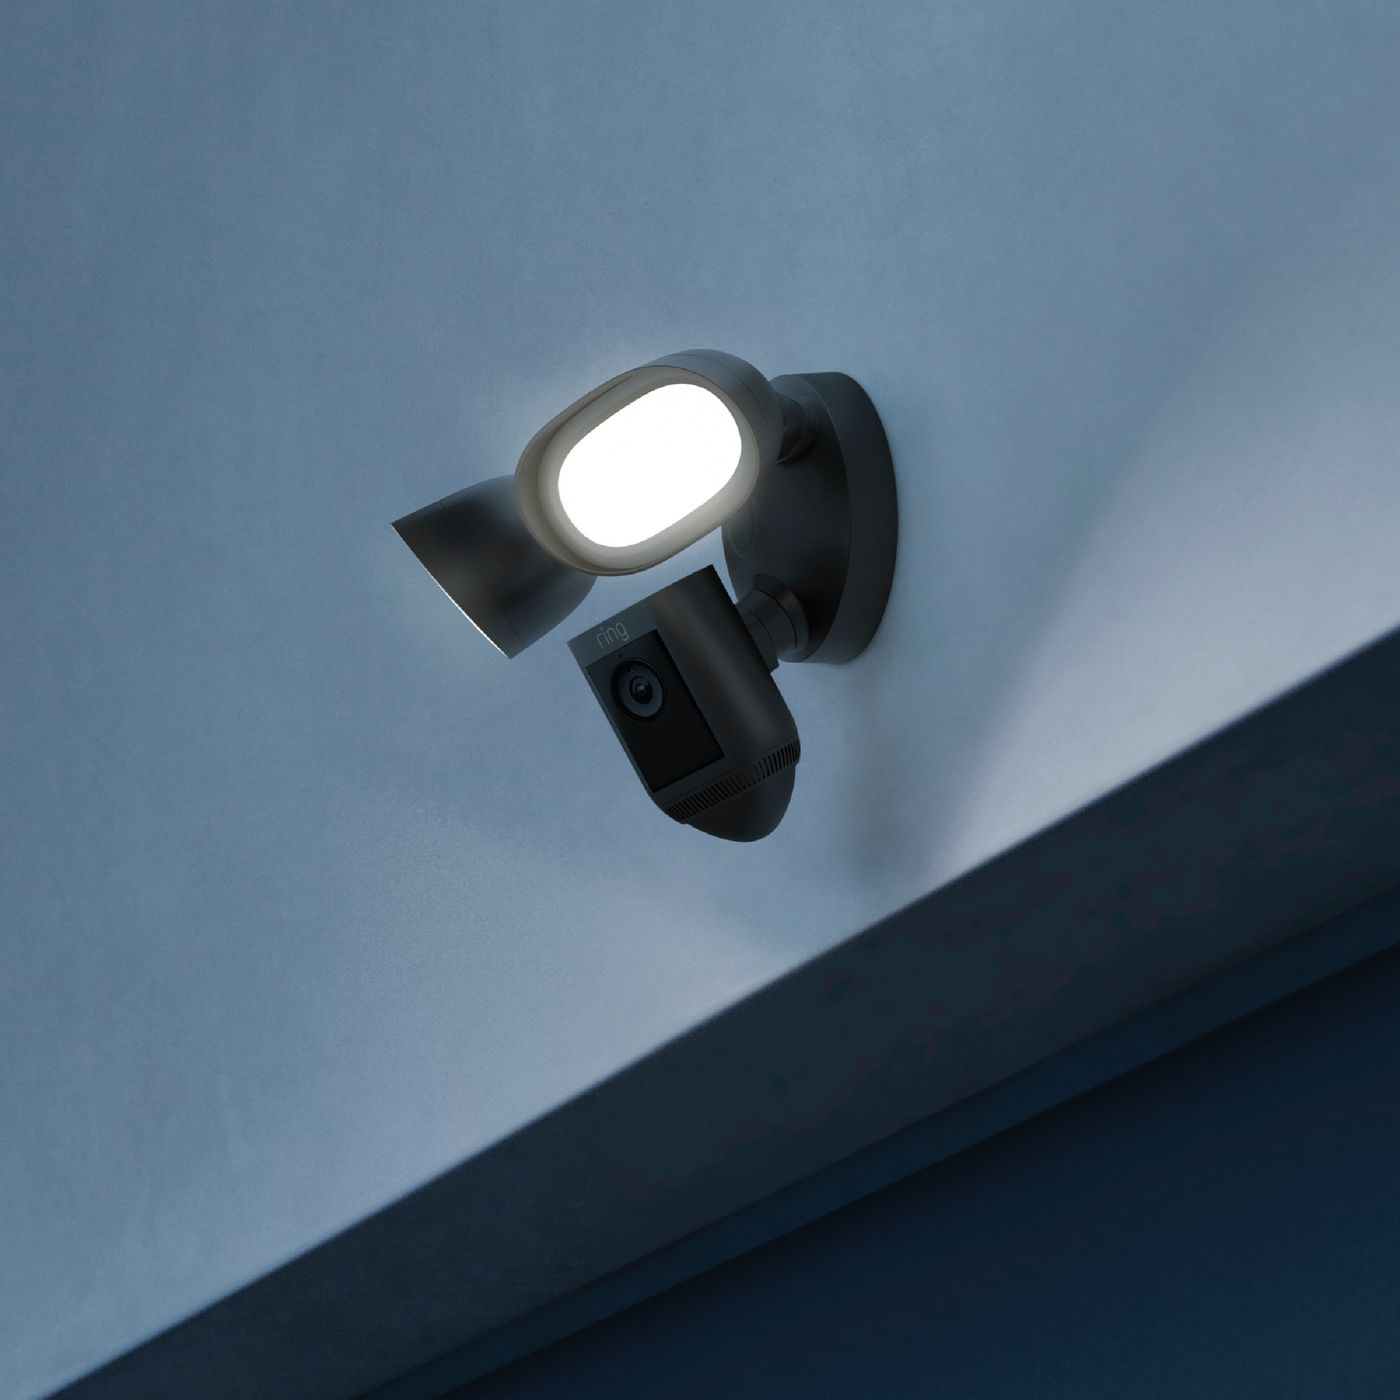 Ring Floodlight Cam Wired Pro Zwart